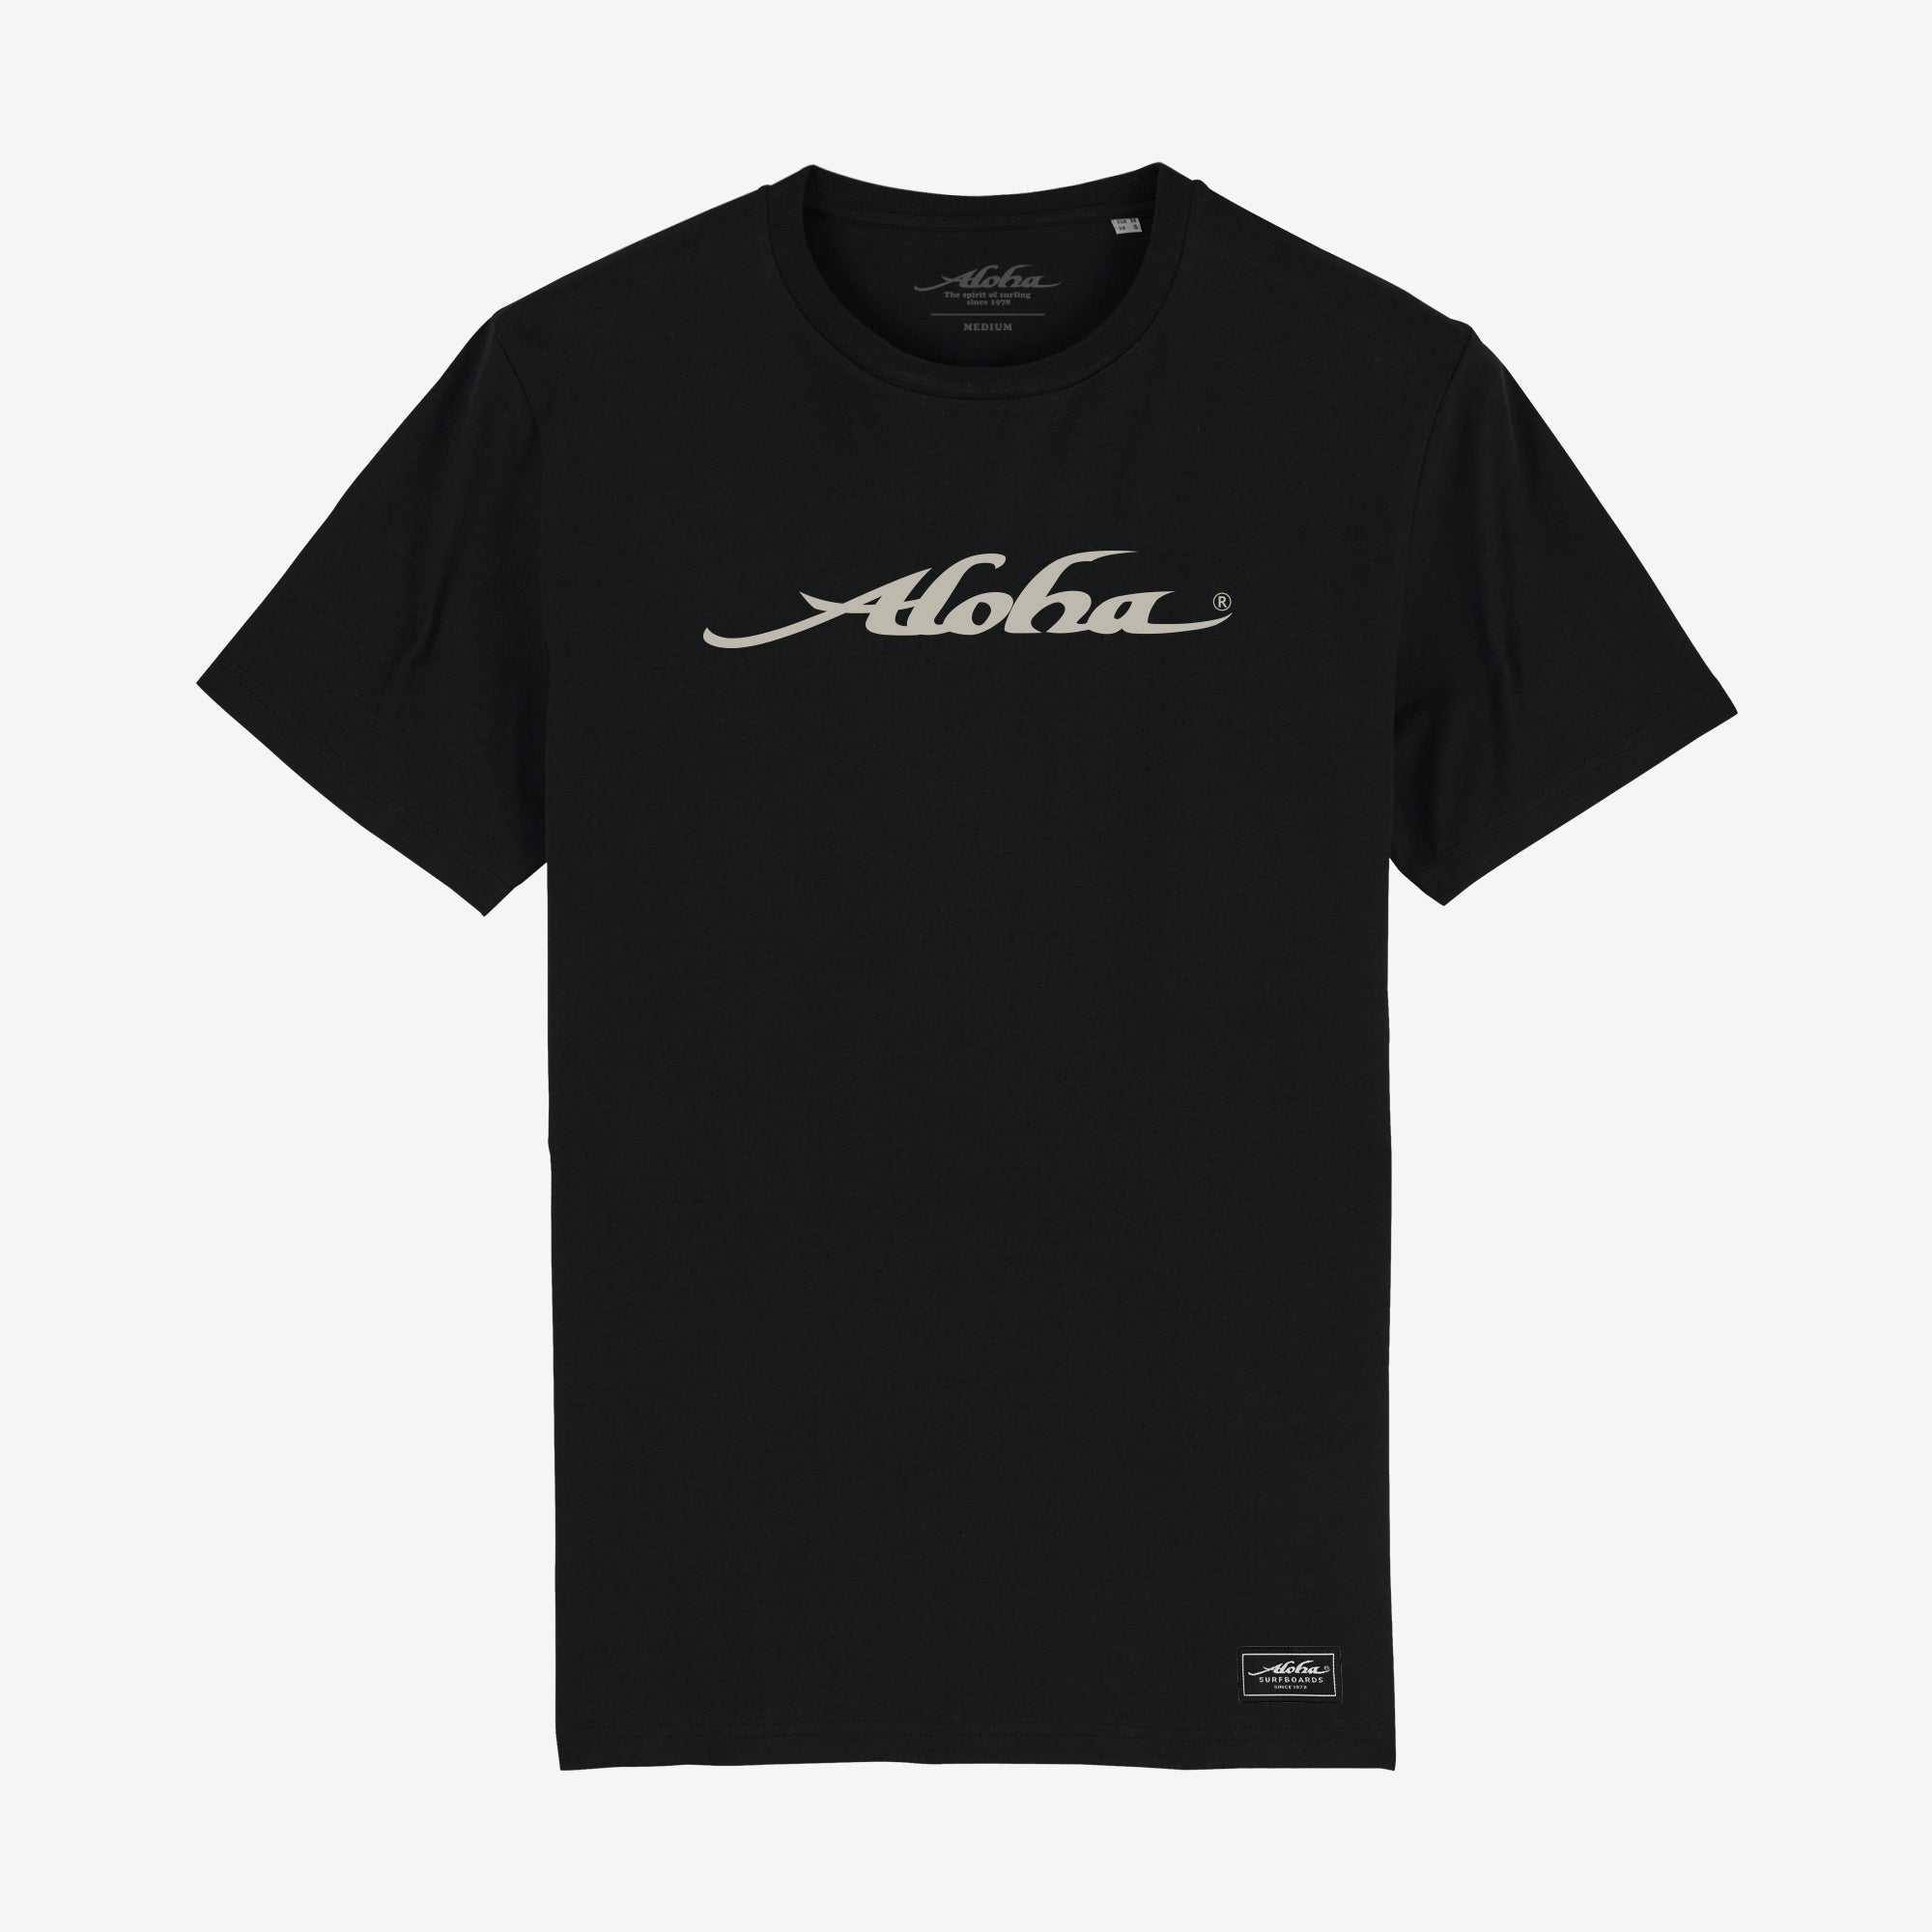 Aloha Logo T-Shirt - Unisex Short Sleeve Tee - Black - ManGo Surfing